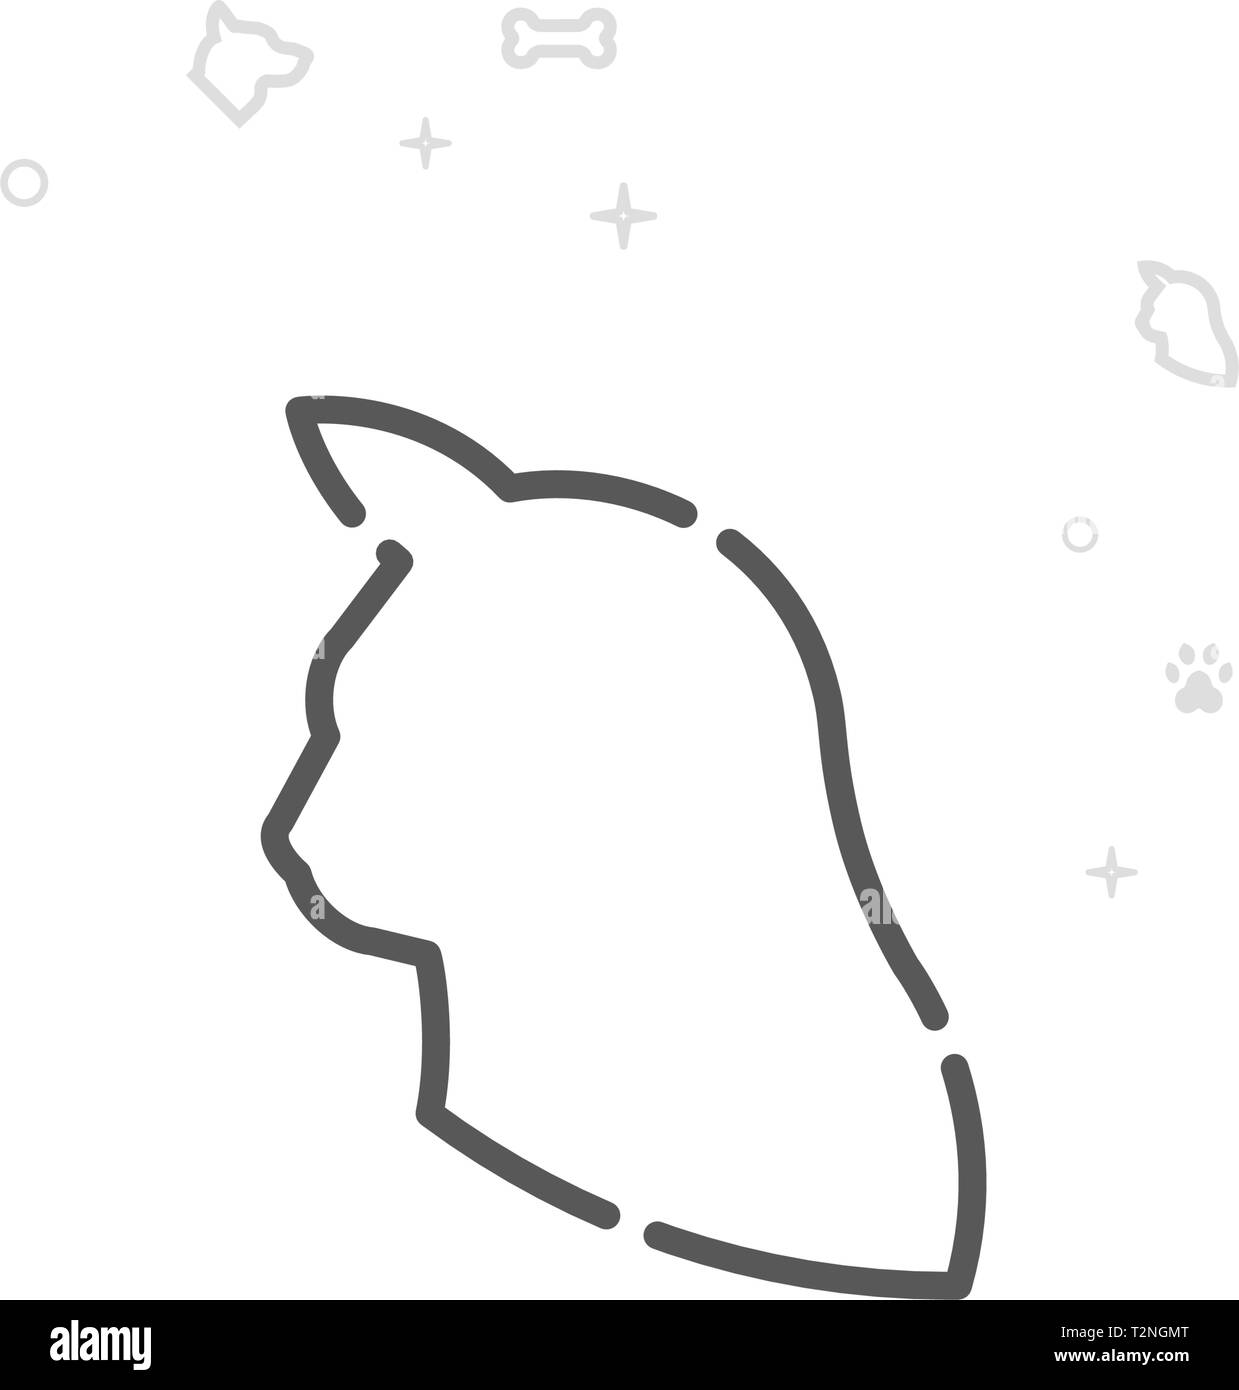 Cat Profile Icon